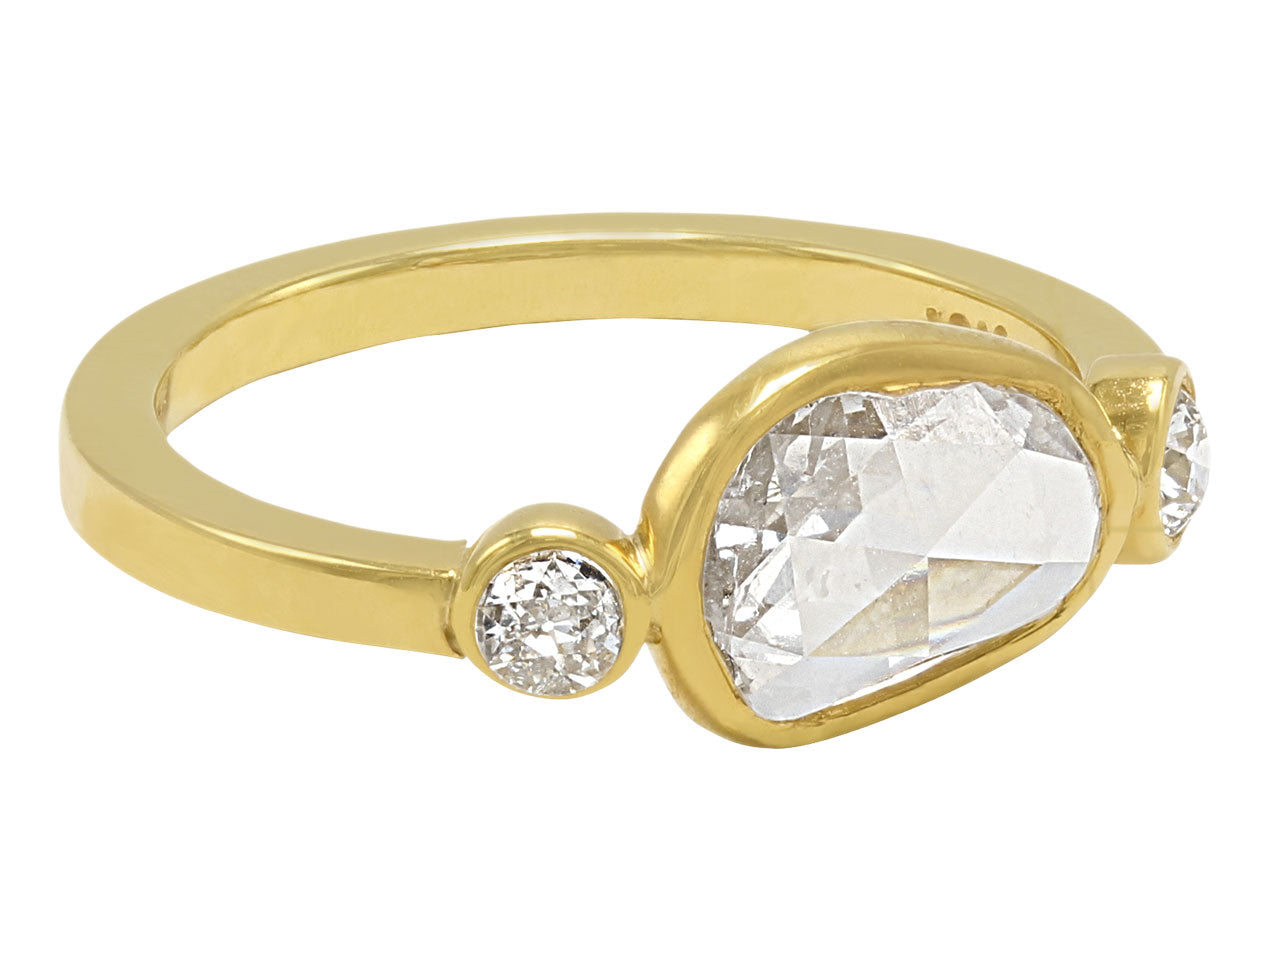 Beladora 'Bespoke' Rose-cut Diamond Ring in 18K Gold